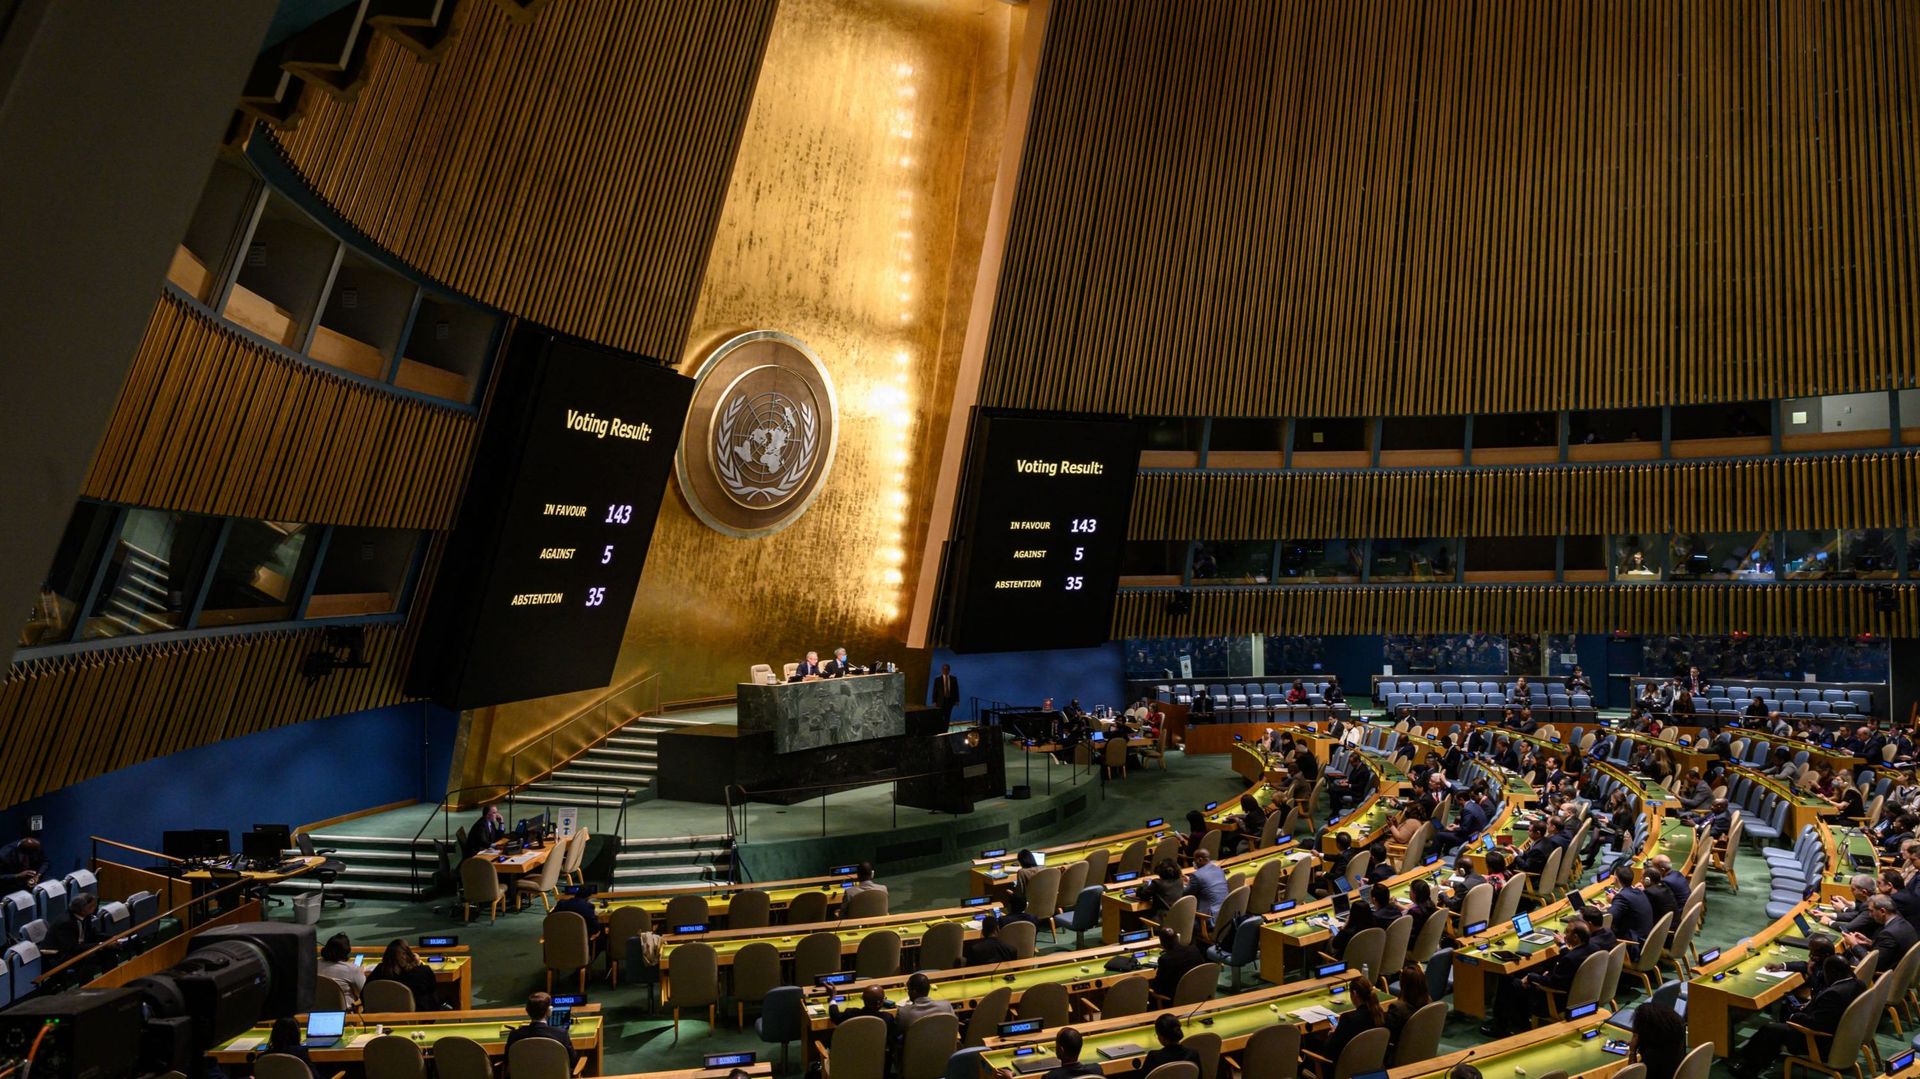 Guerre en Ukraine : l’Assemblée générale de l’ONU devrait adopter une résolution pour "sortir du conflit" en Ukraine. Photo d’illustration.